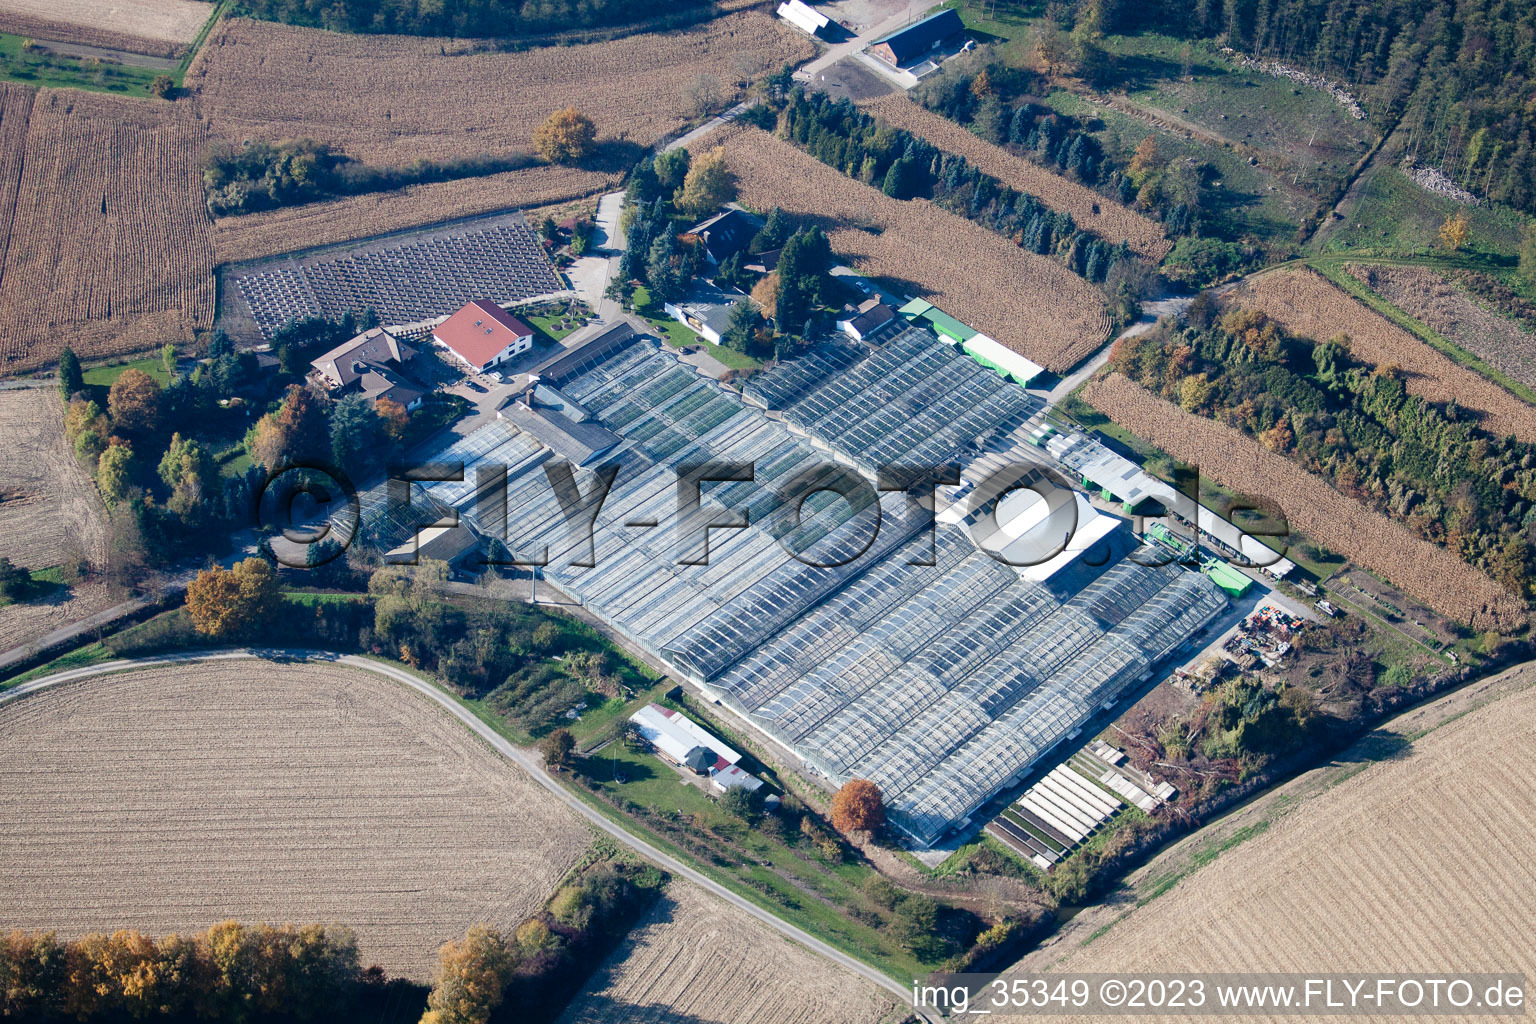 Géranium Endisch GmbH à Hagenbach dans le département Rhénanie-Palatinat, Allemagne vue d'en haut